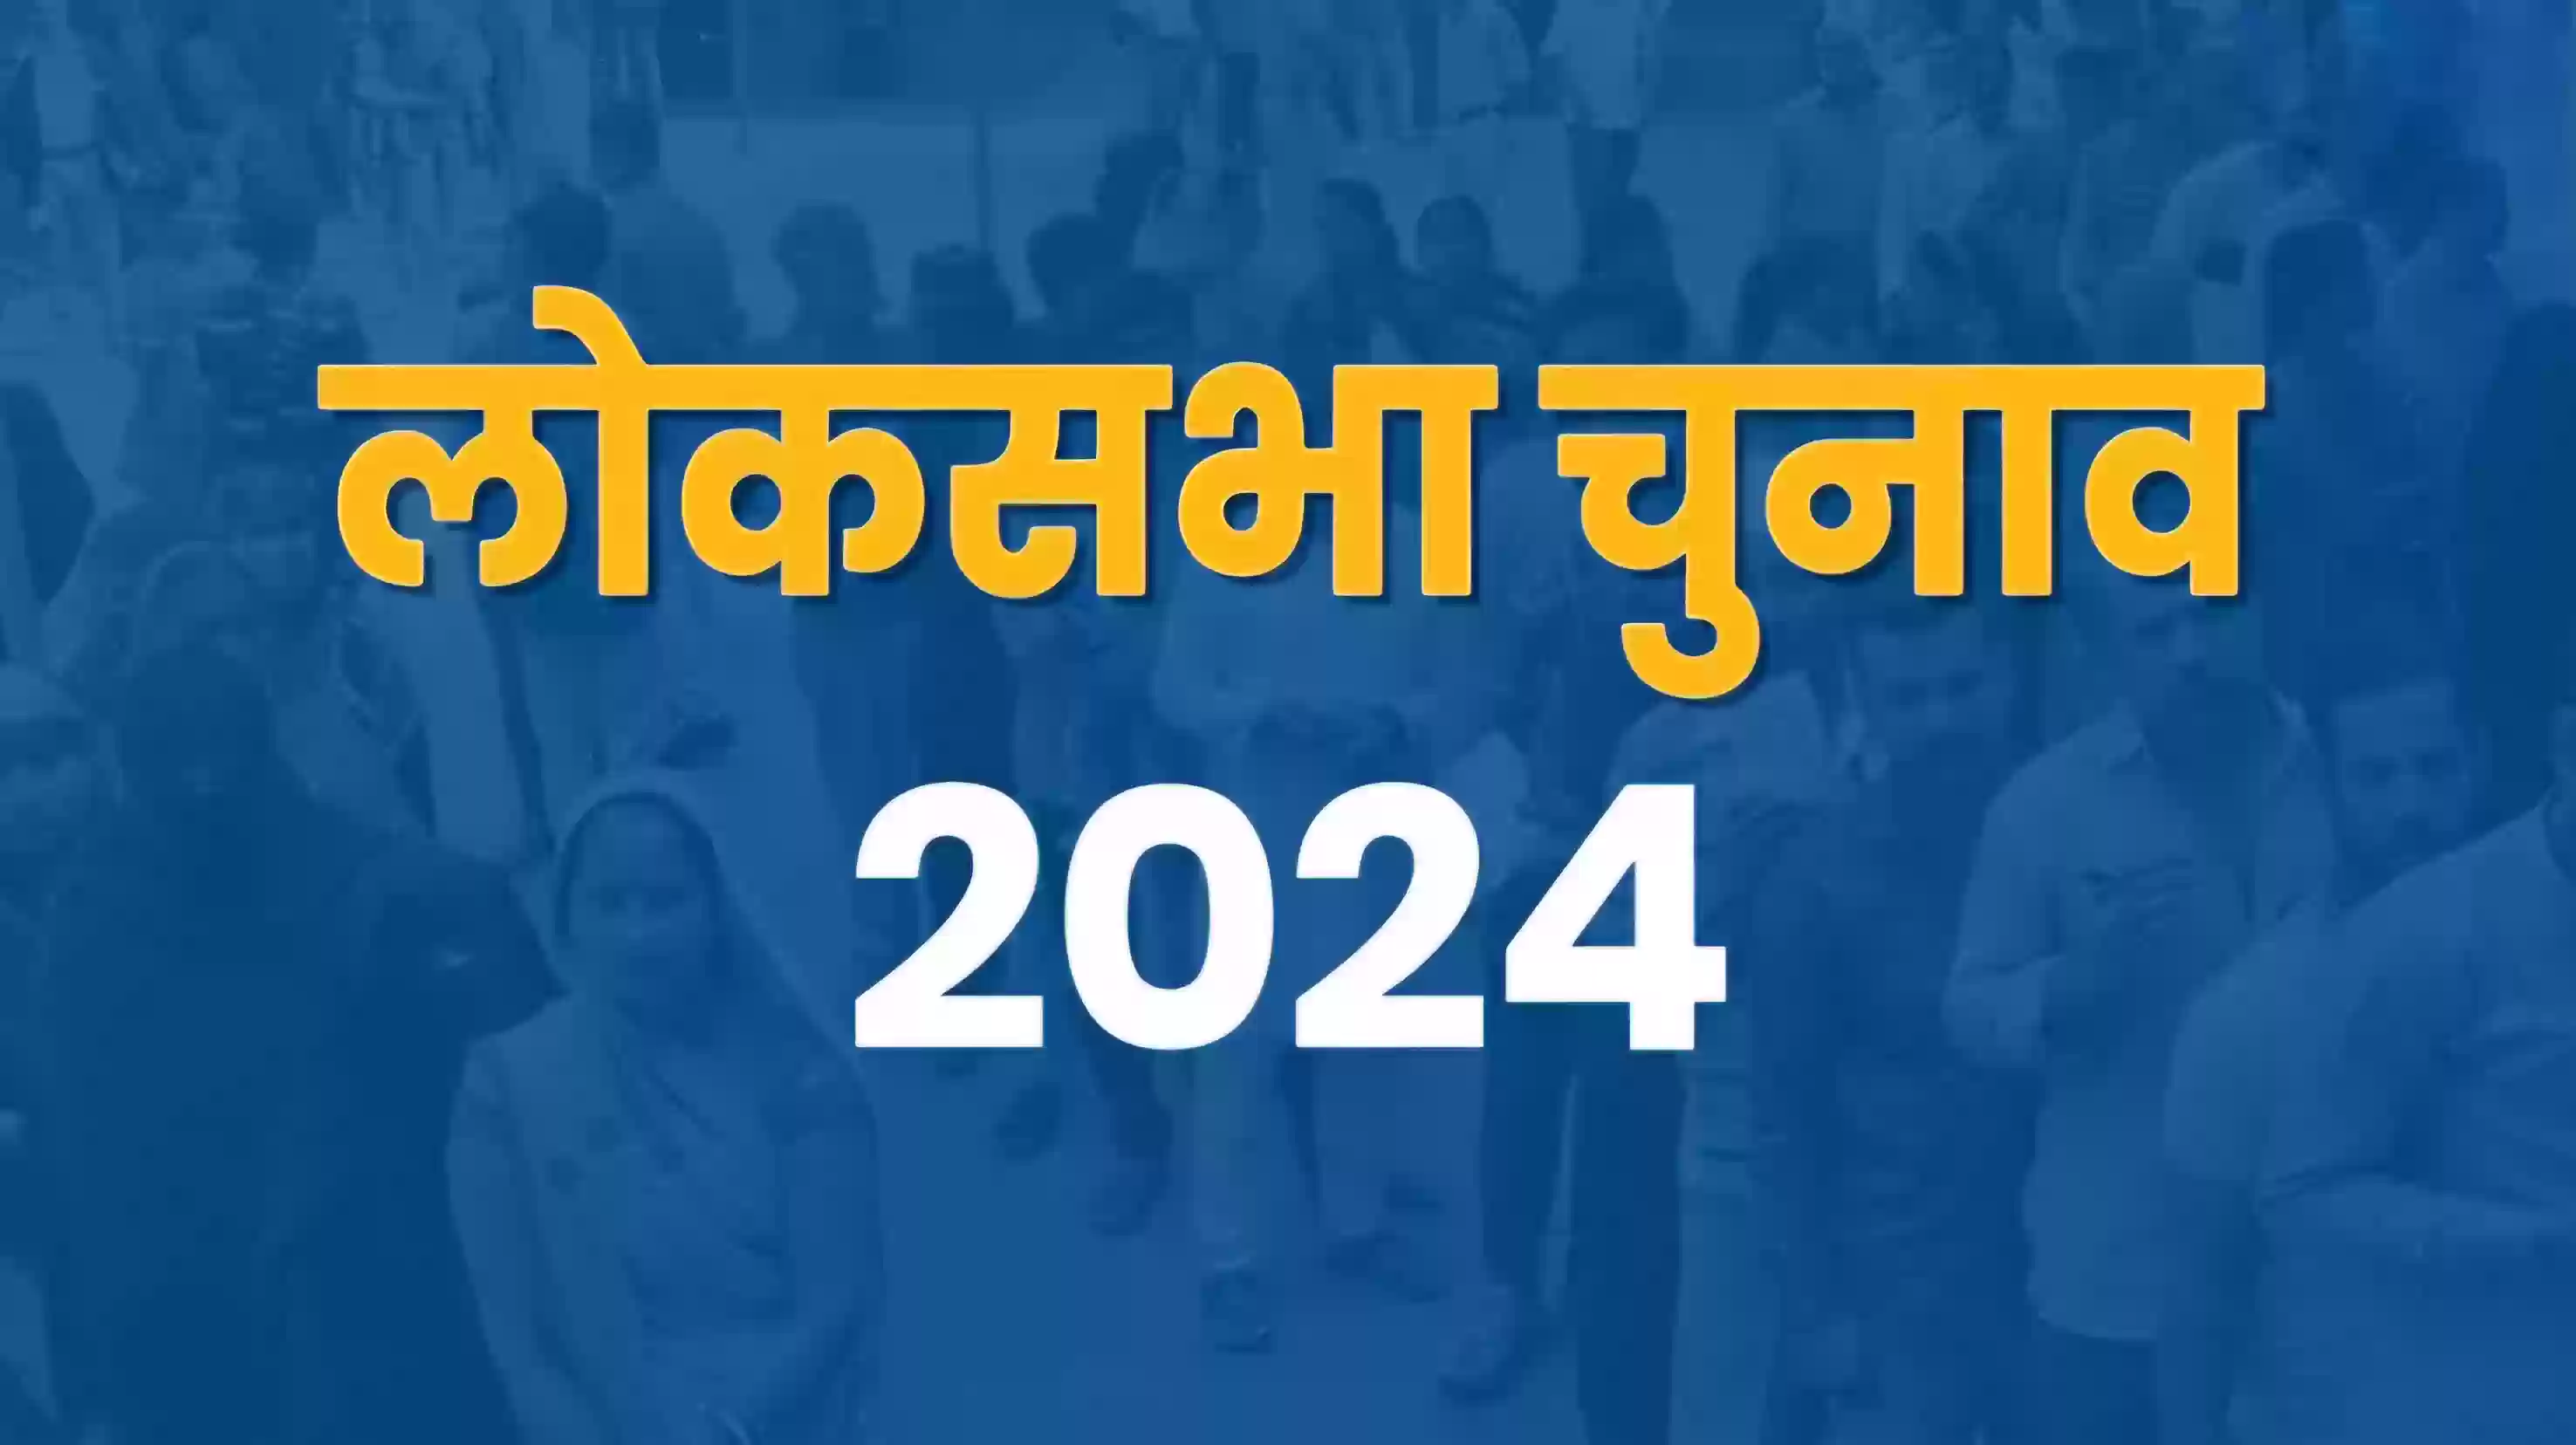 Lok Sabha Election 2024 : दूसरे चरण का प्रचार अभियान थमा, 12 राज्यों और केंद्र शासित प्रदेशों की 88 सीटों पर शुक्रवार को होगा मतदान